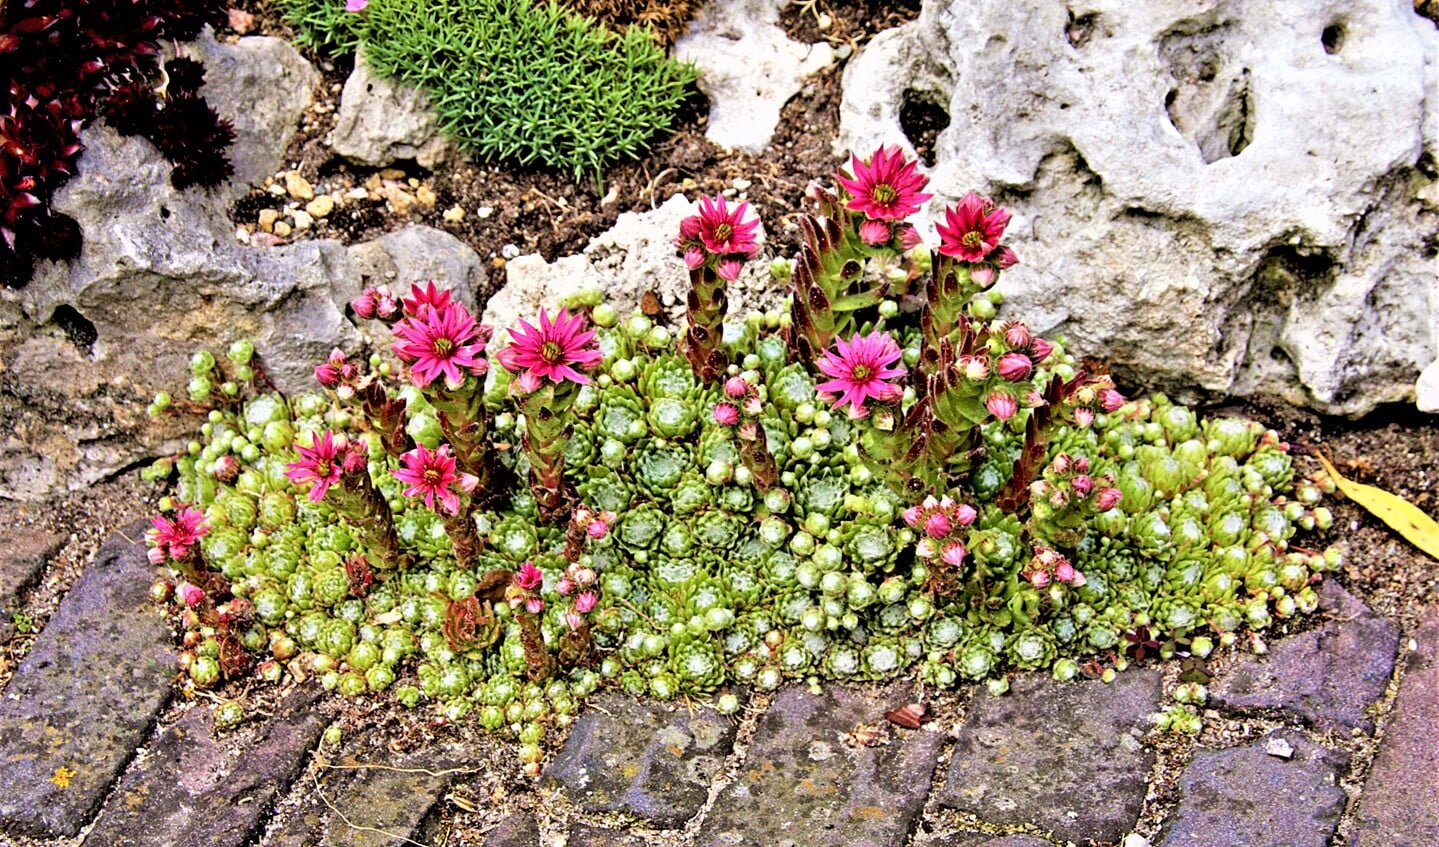 Huislook is een eetbare plant met rozetten die zelfs medicinale werkingen heeft. Hij groeit graag op het dak, maar ook op de bestrating in de tuin (foto: pr).